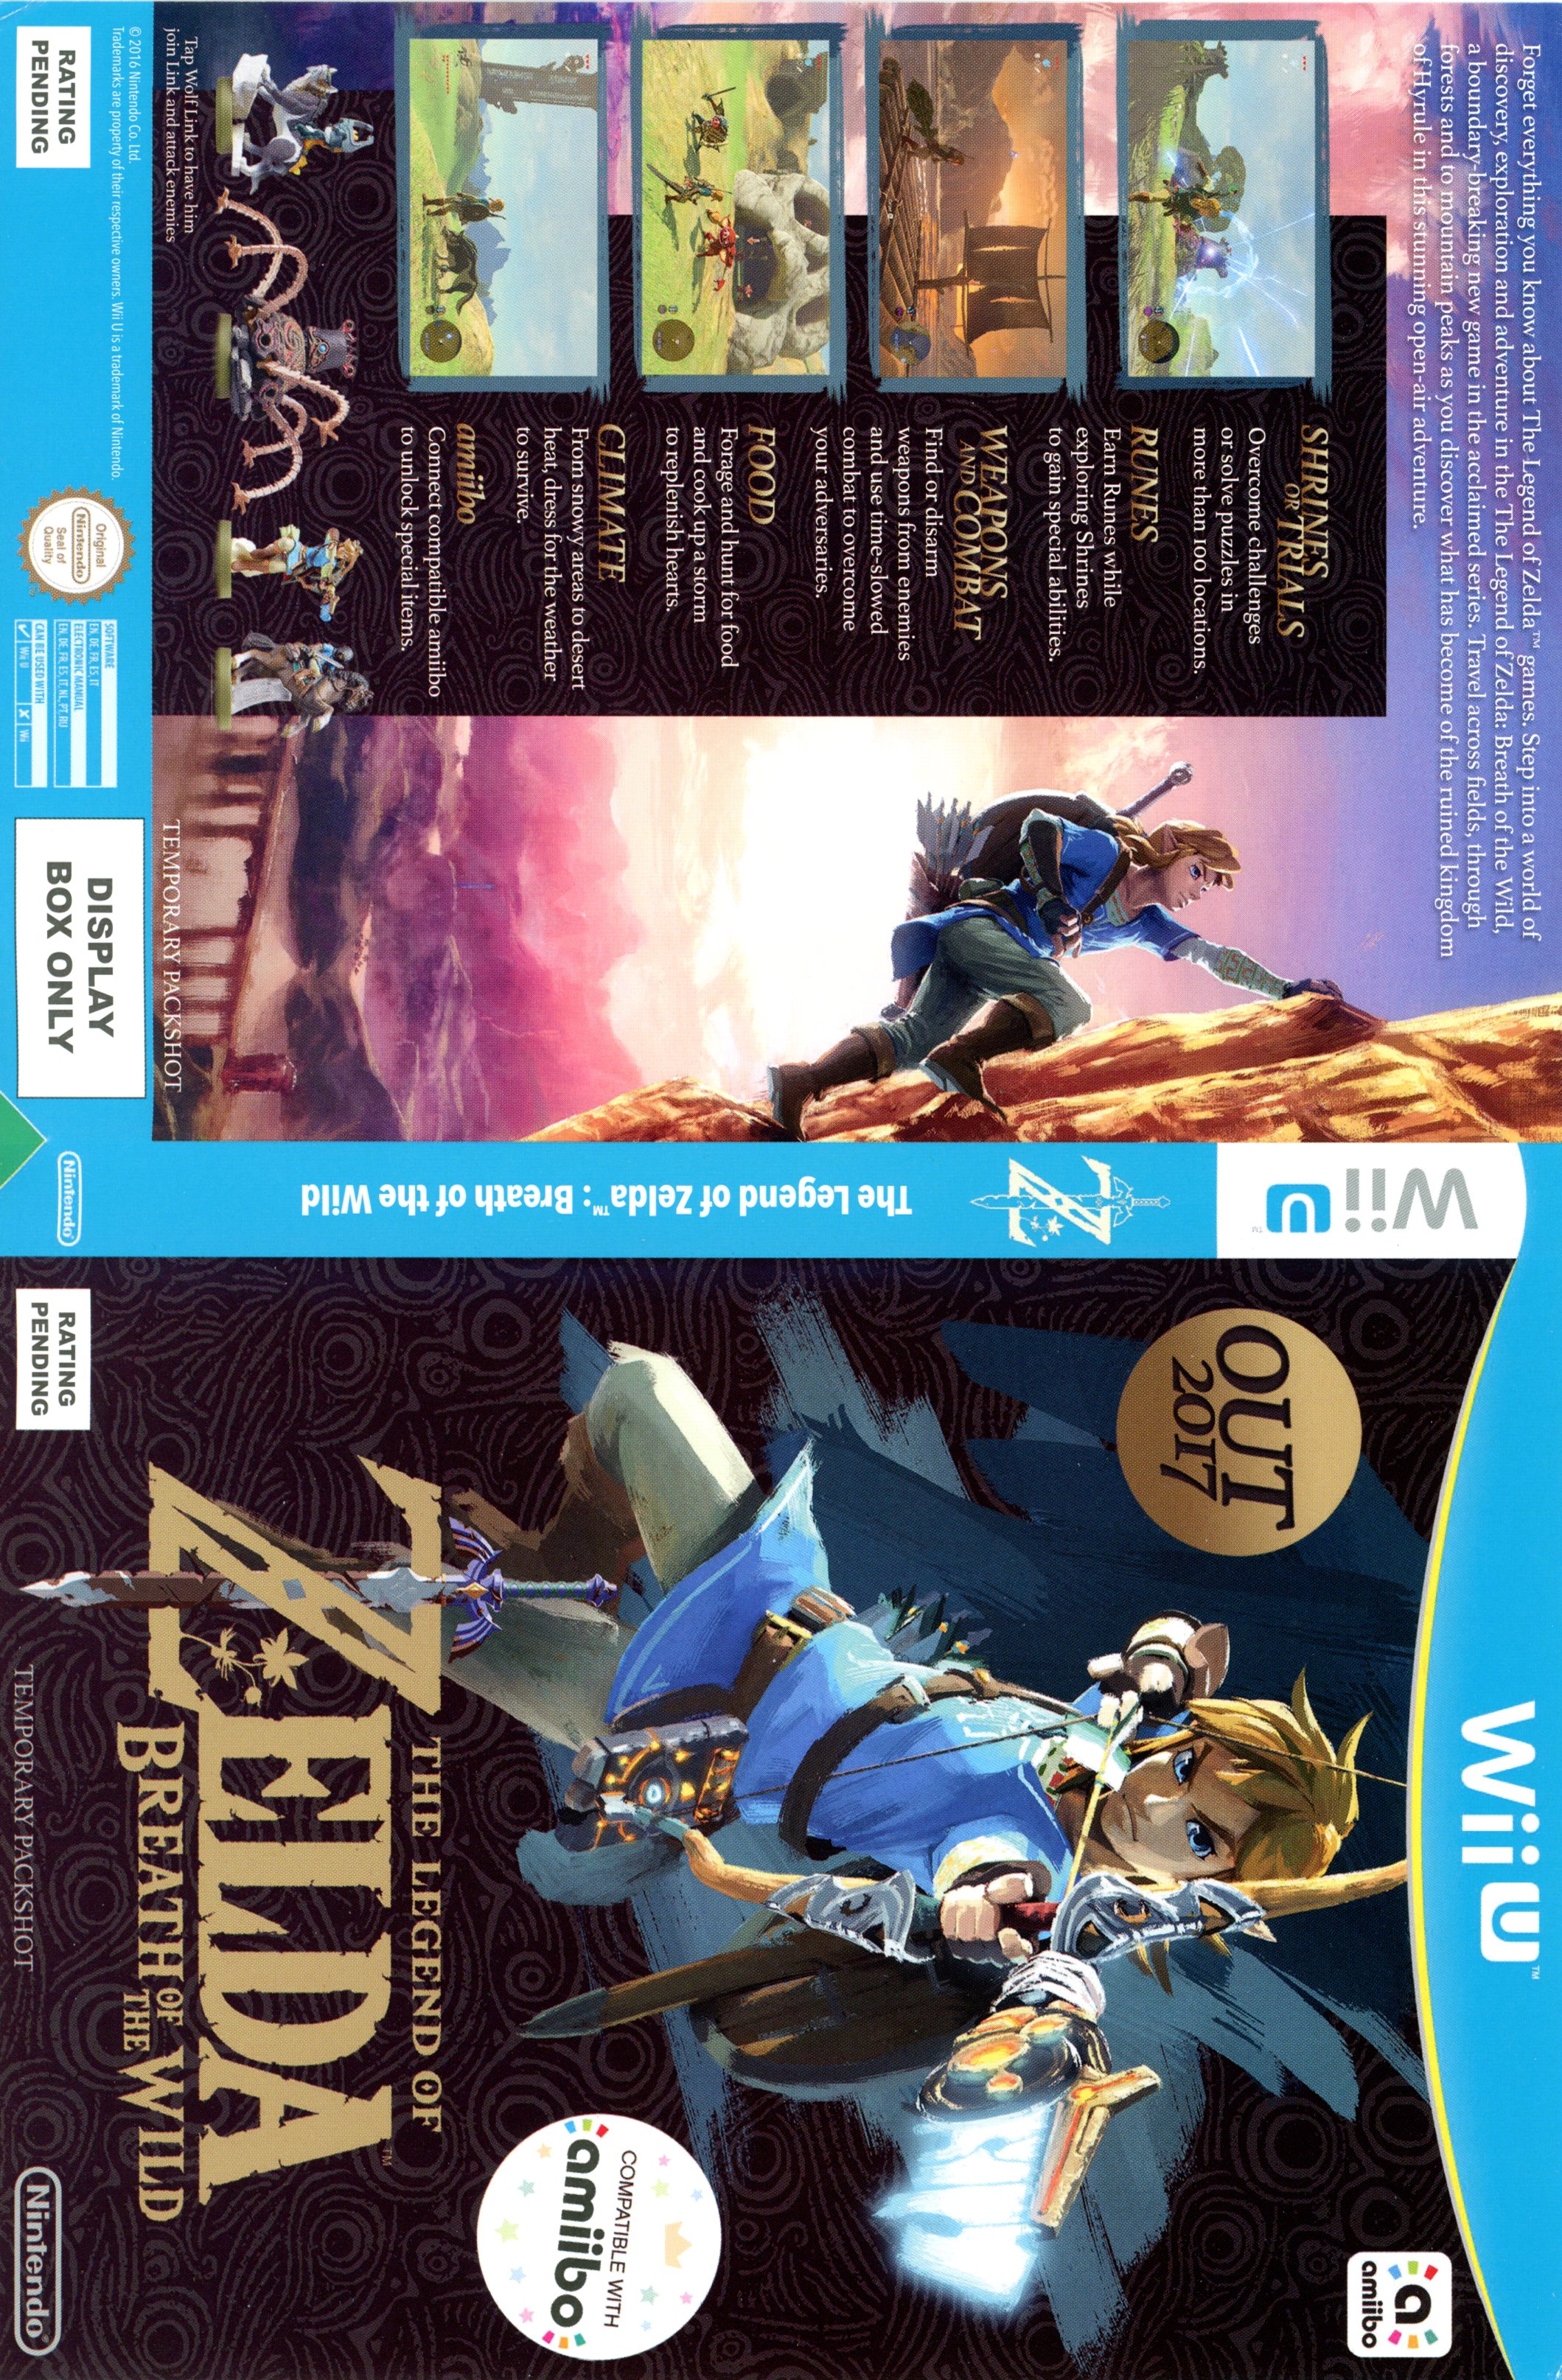 Cuando suelo Conexión Legend Of Zelda Breath Of The Wild Nintendo Wii U Display Only Box Art :  Nintendo : Free Download, Borrow, and Streaming : Internet Archive